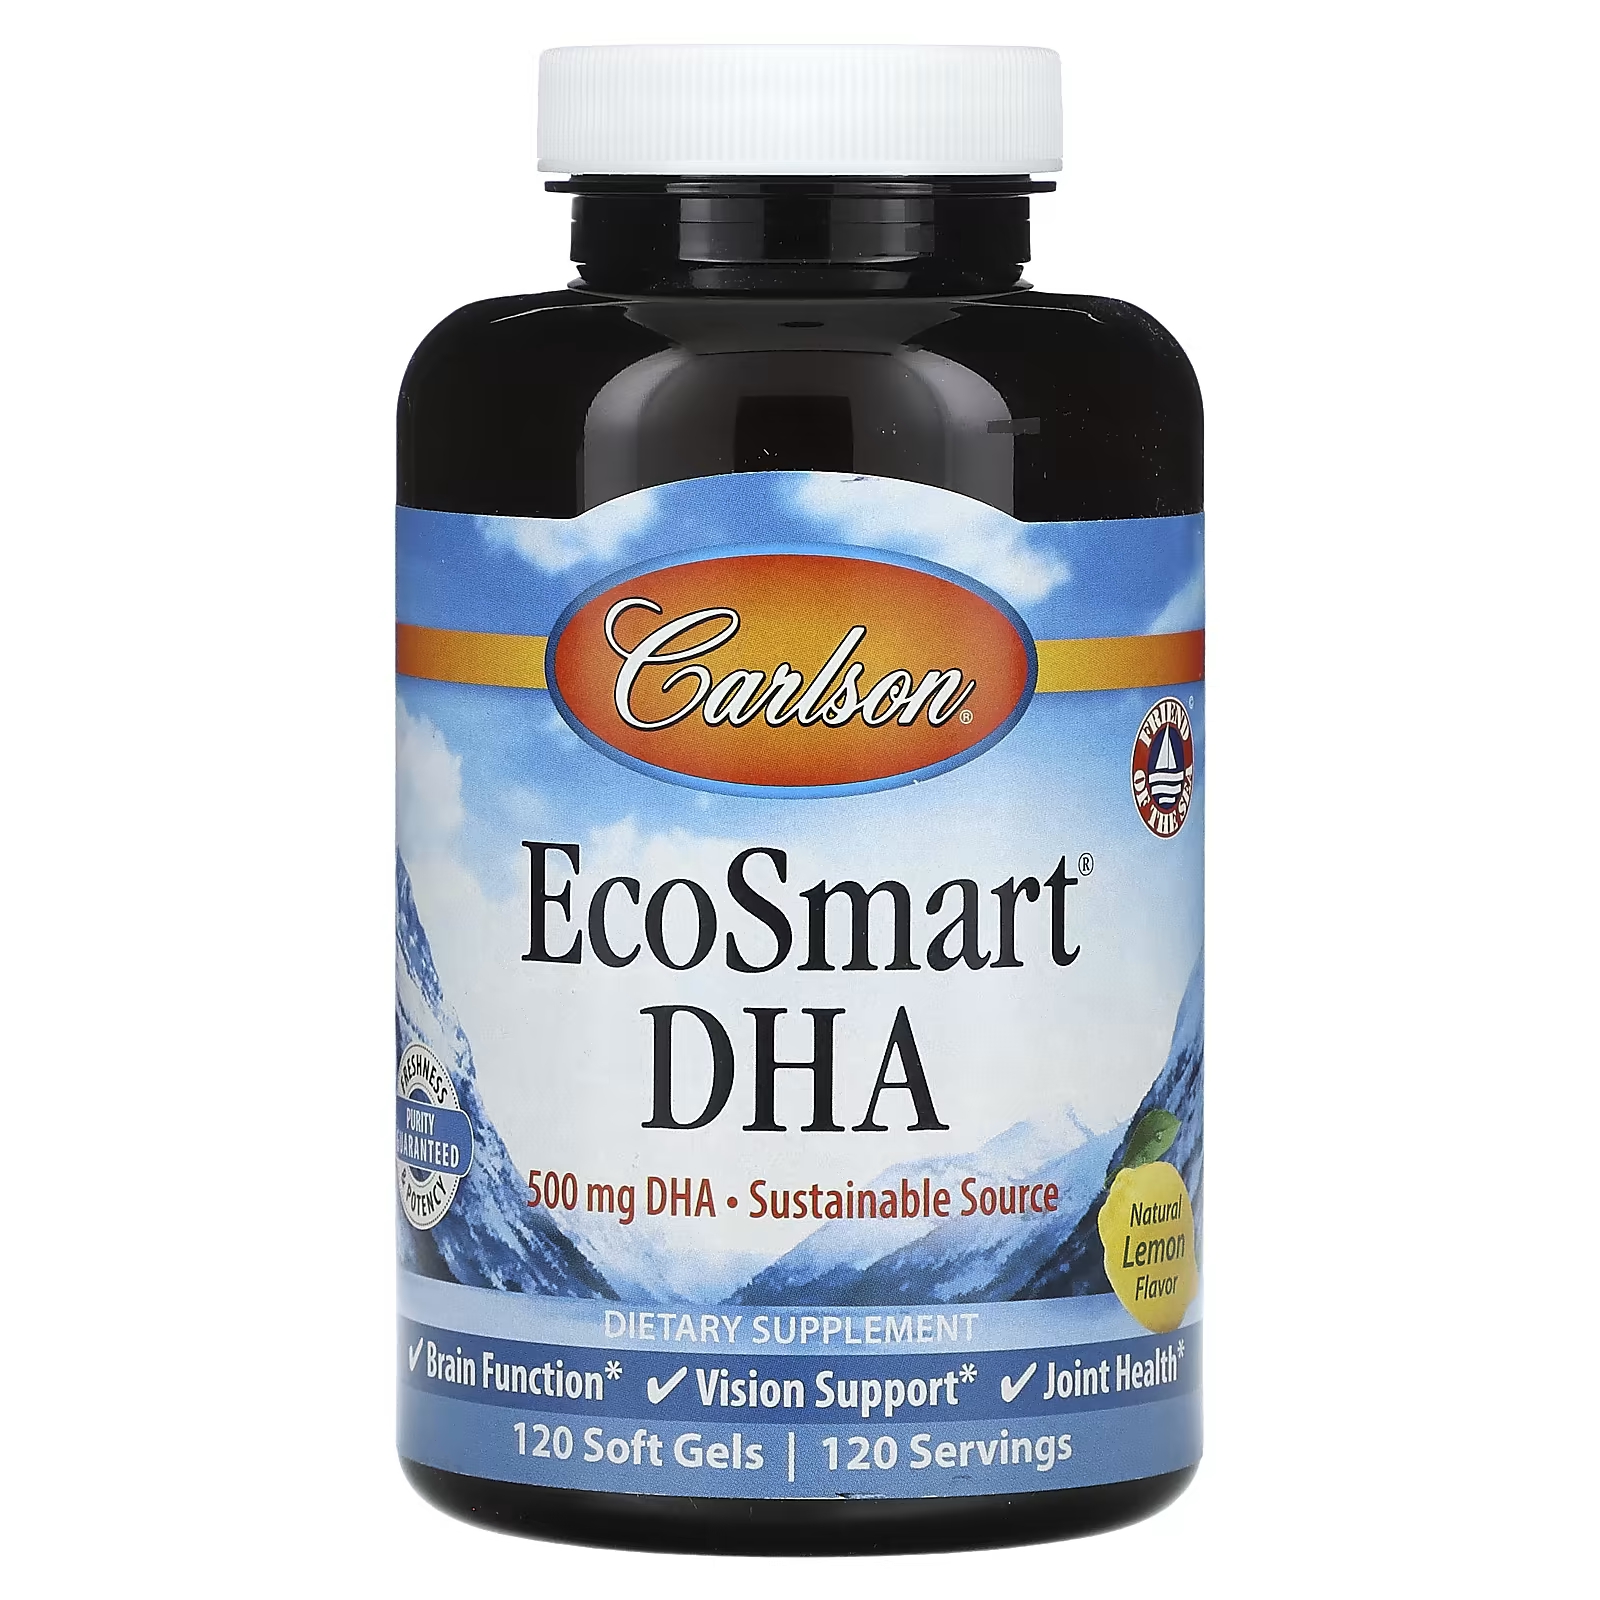 Пищевая добавка Carlson EcoSmart DHA натуральный лимон, 120 мягких таблеток